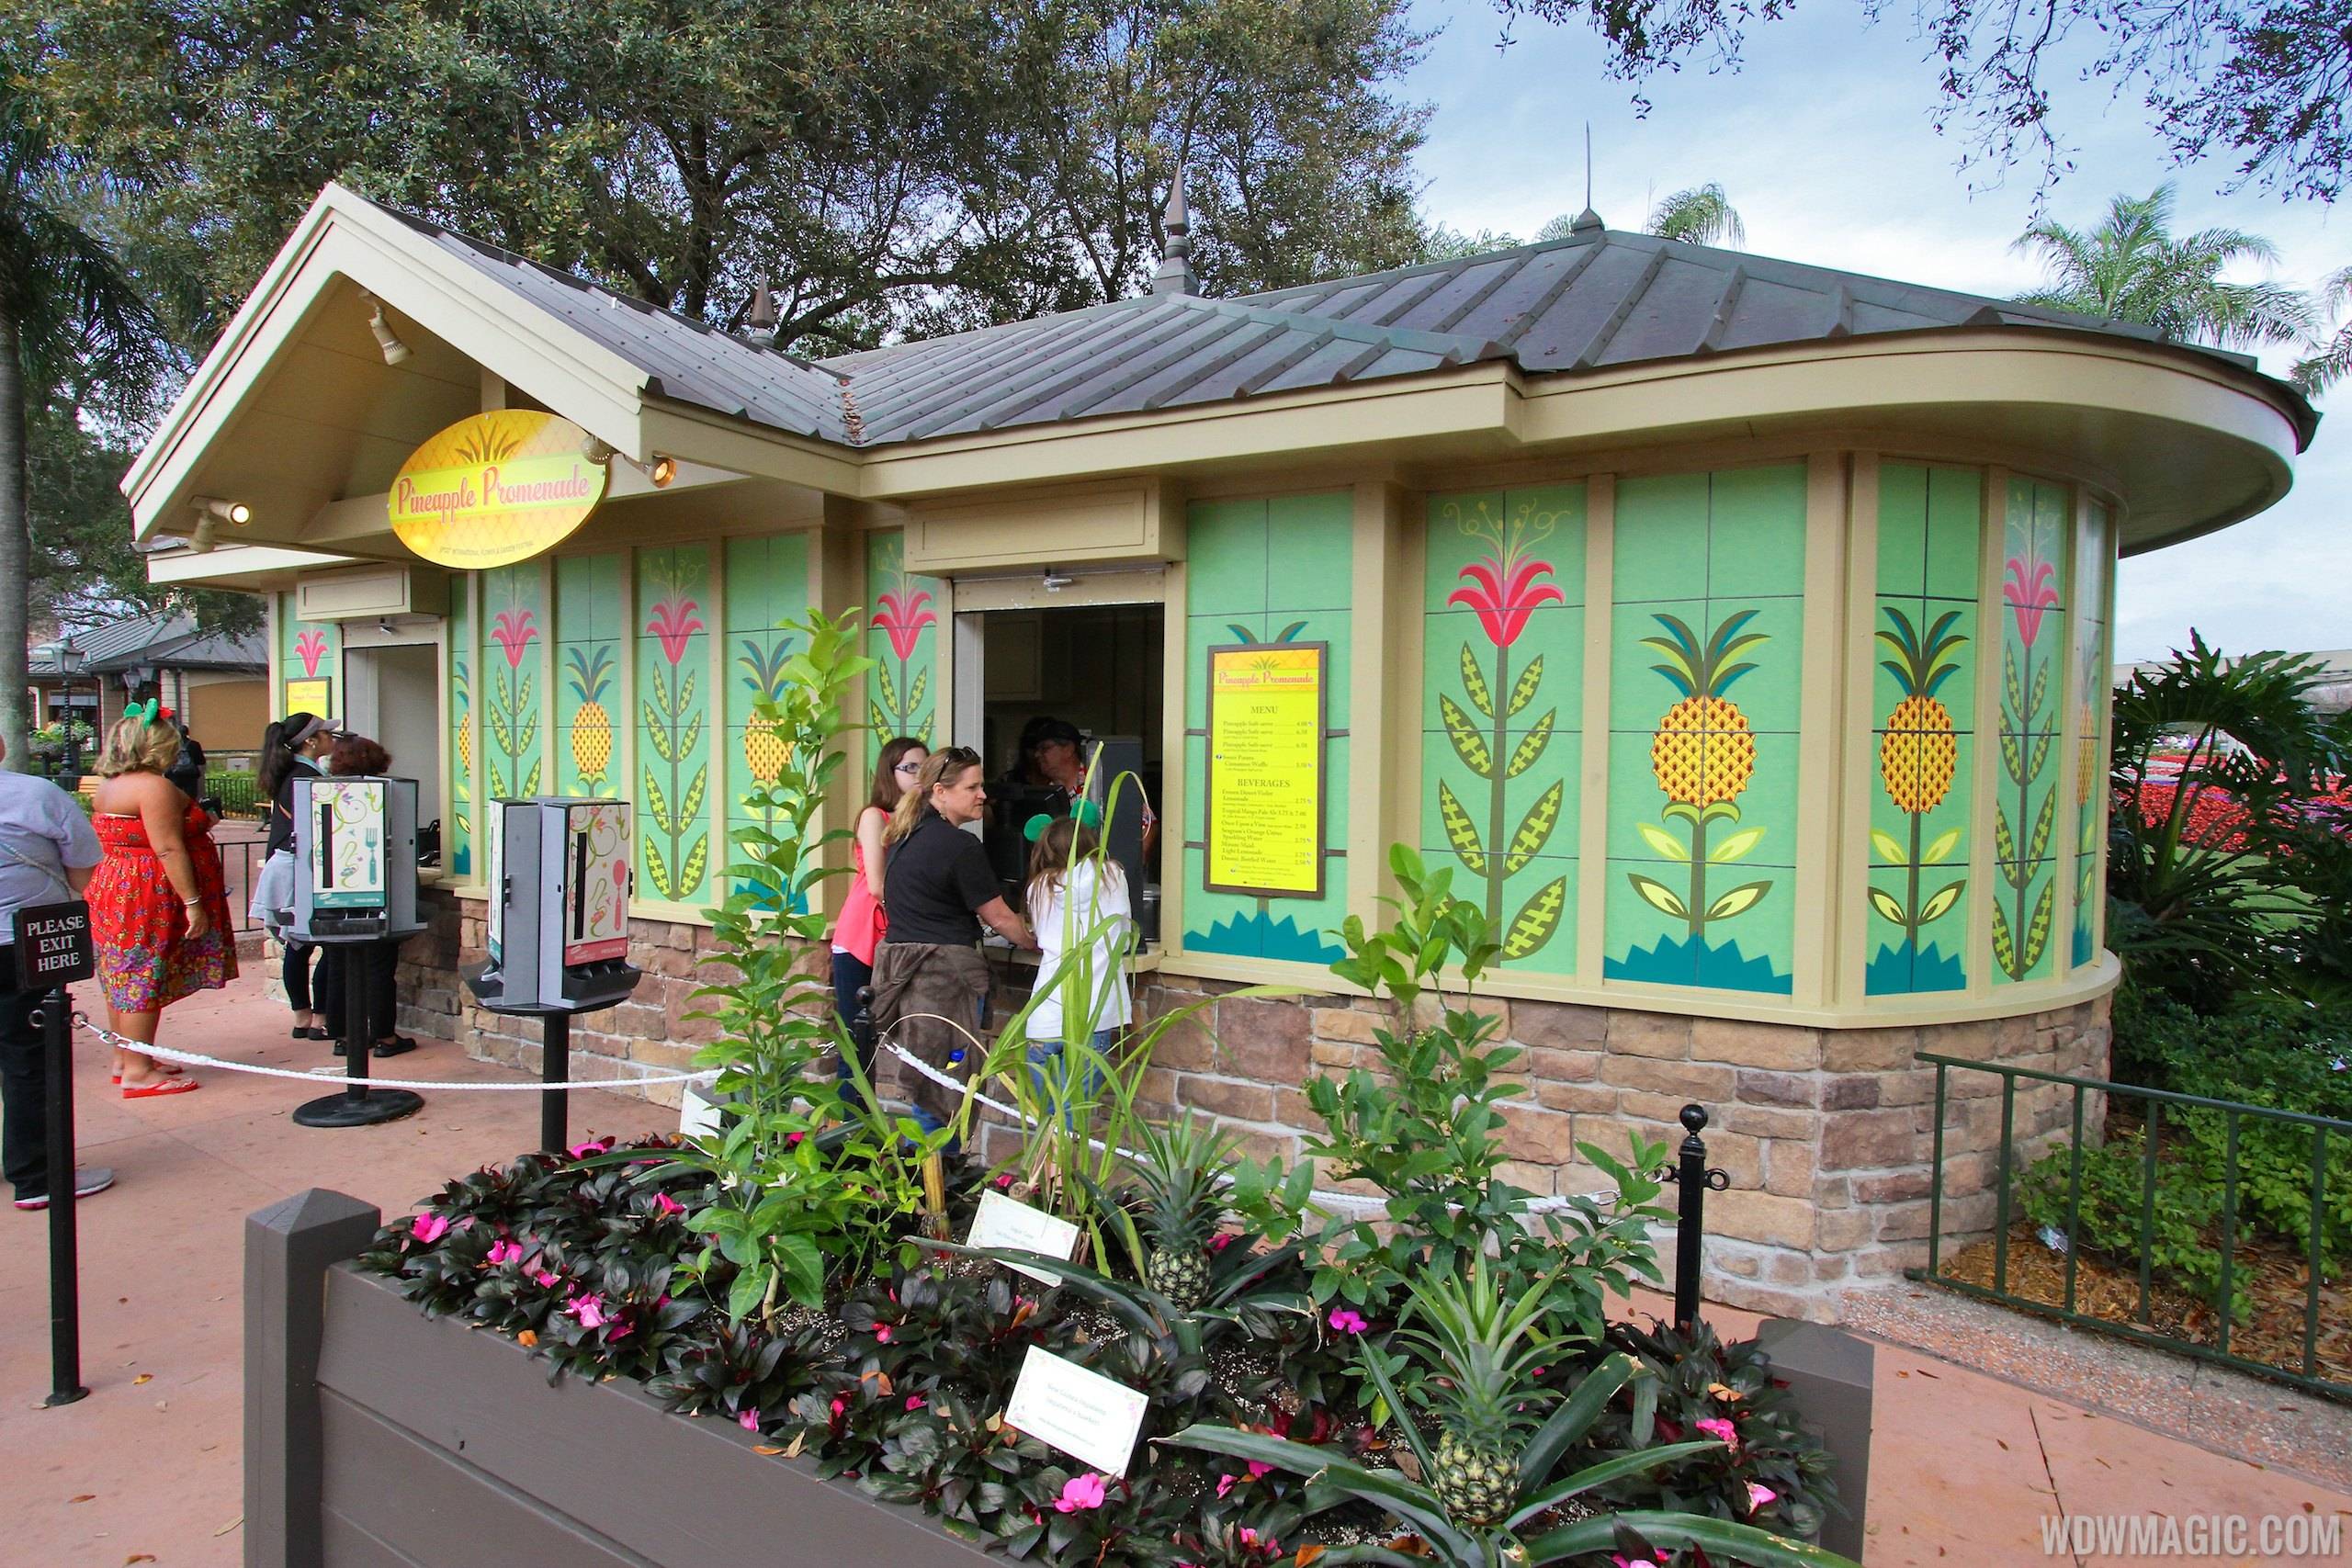 2014 Epcot Flower and Garden Festival Outdoor Kitchen kiosks - Pineapple Promenade kiosk